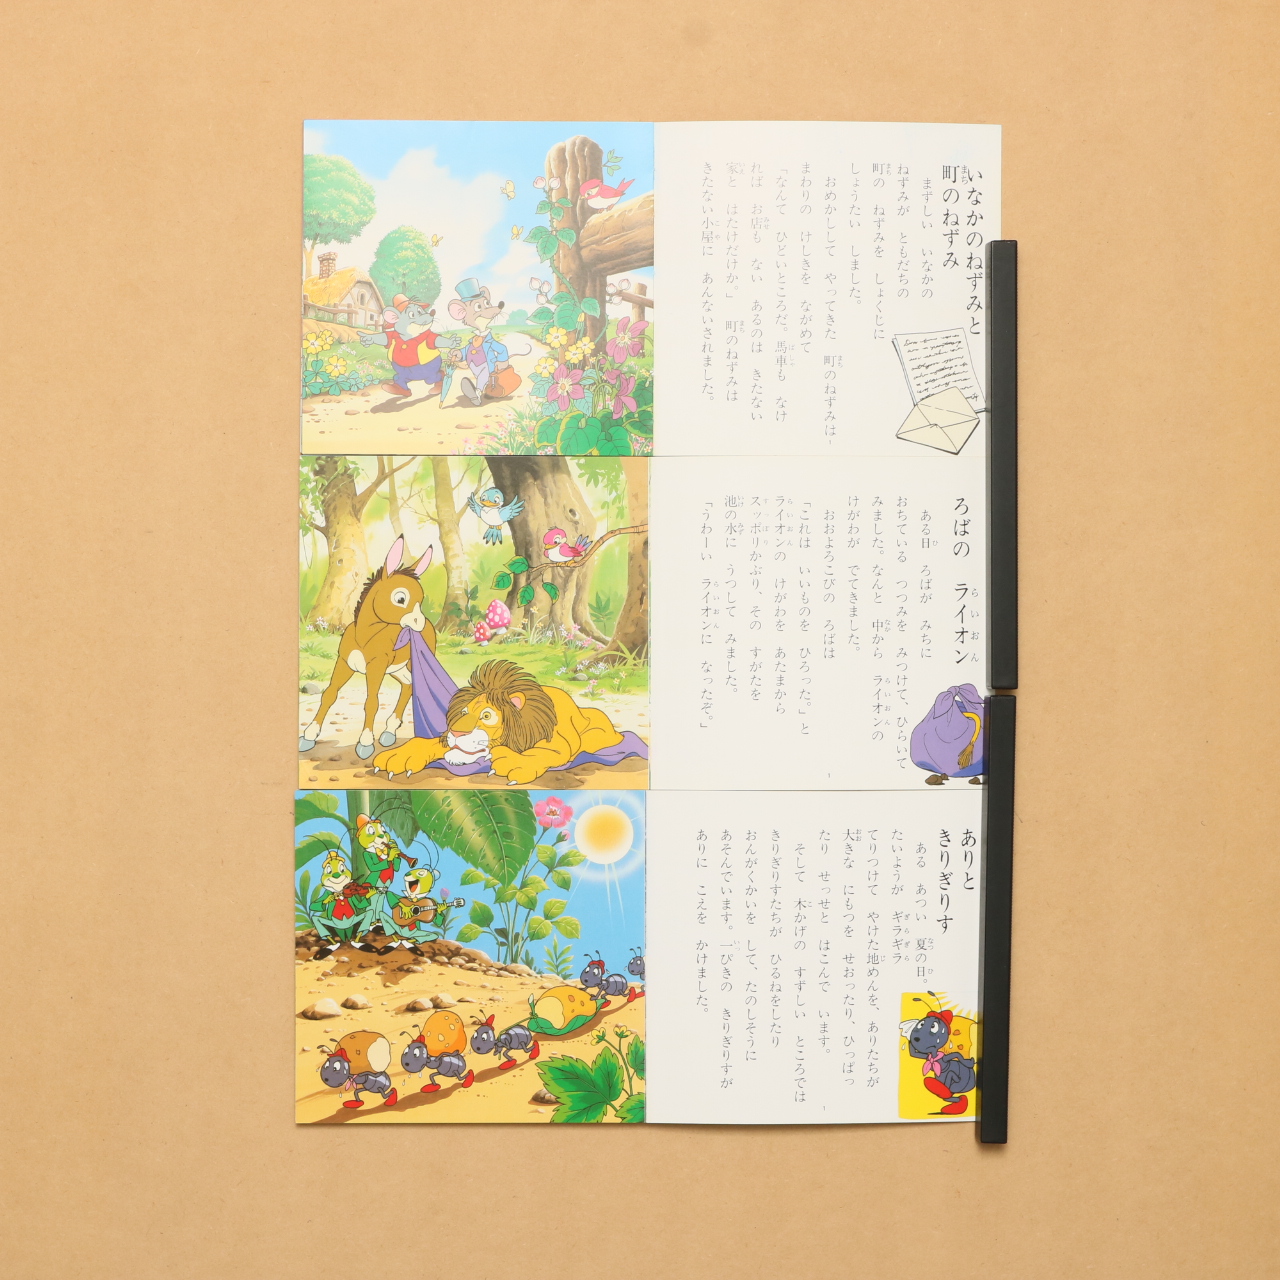 世界の名作童話 全80巻完結セット よい子とママのアニメ絵本 中古絵本の販売 えほんポケット